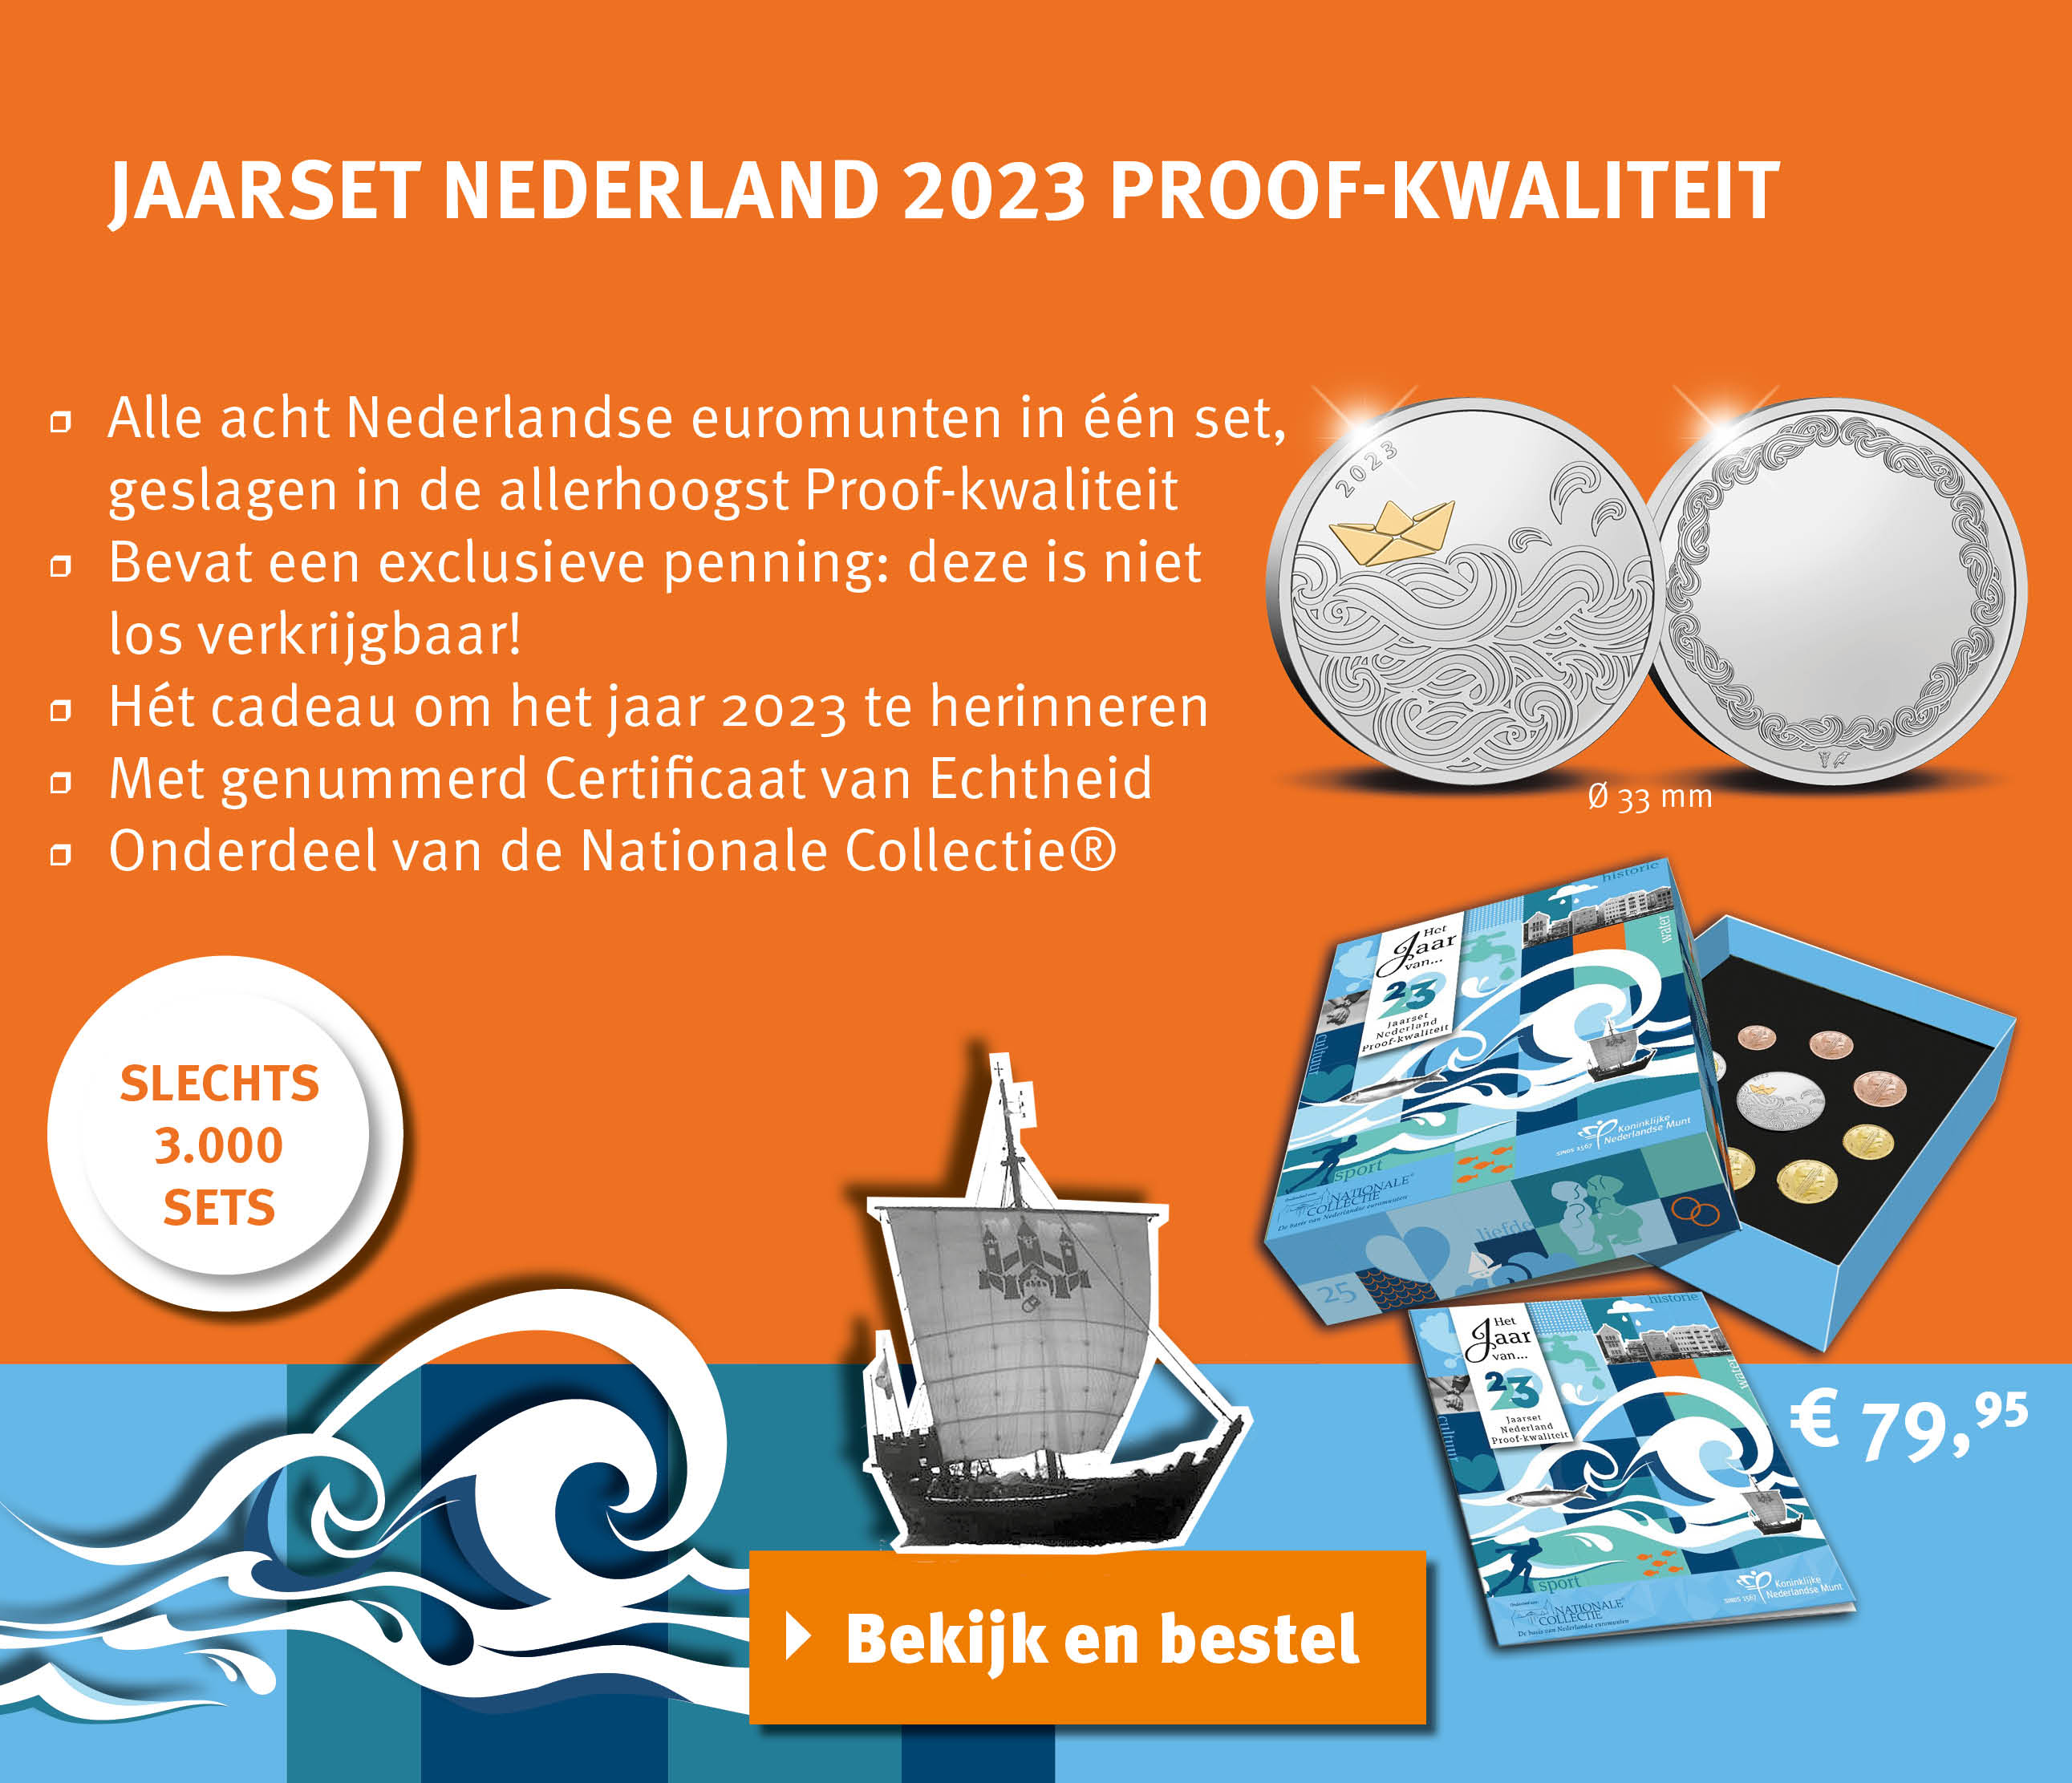 Bekijk en bestel: Proof Jaarset Nederlands 2023